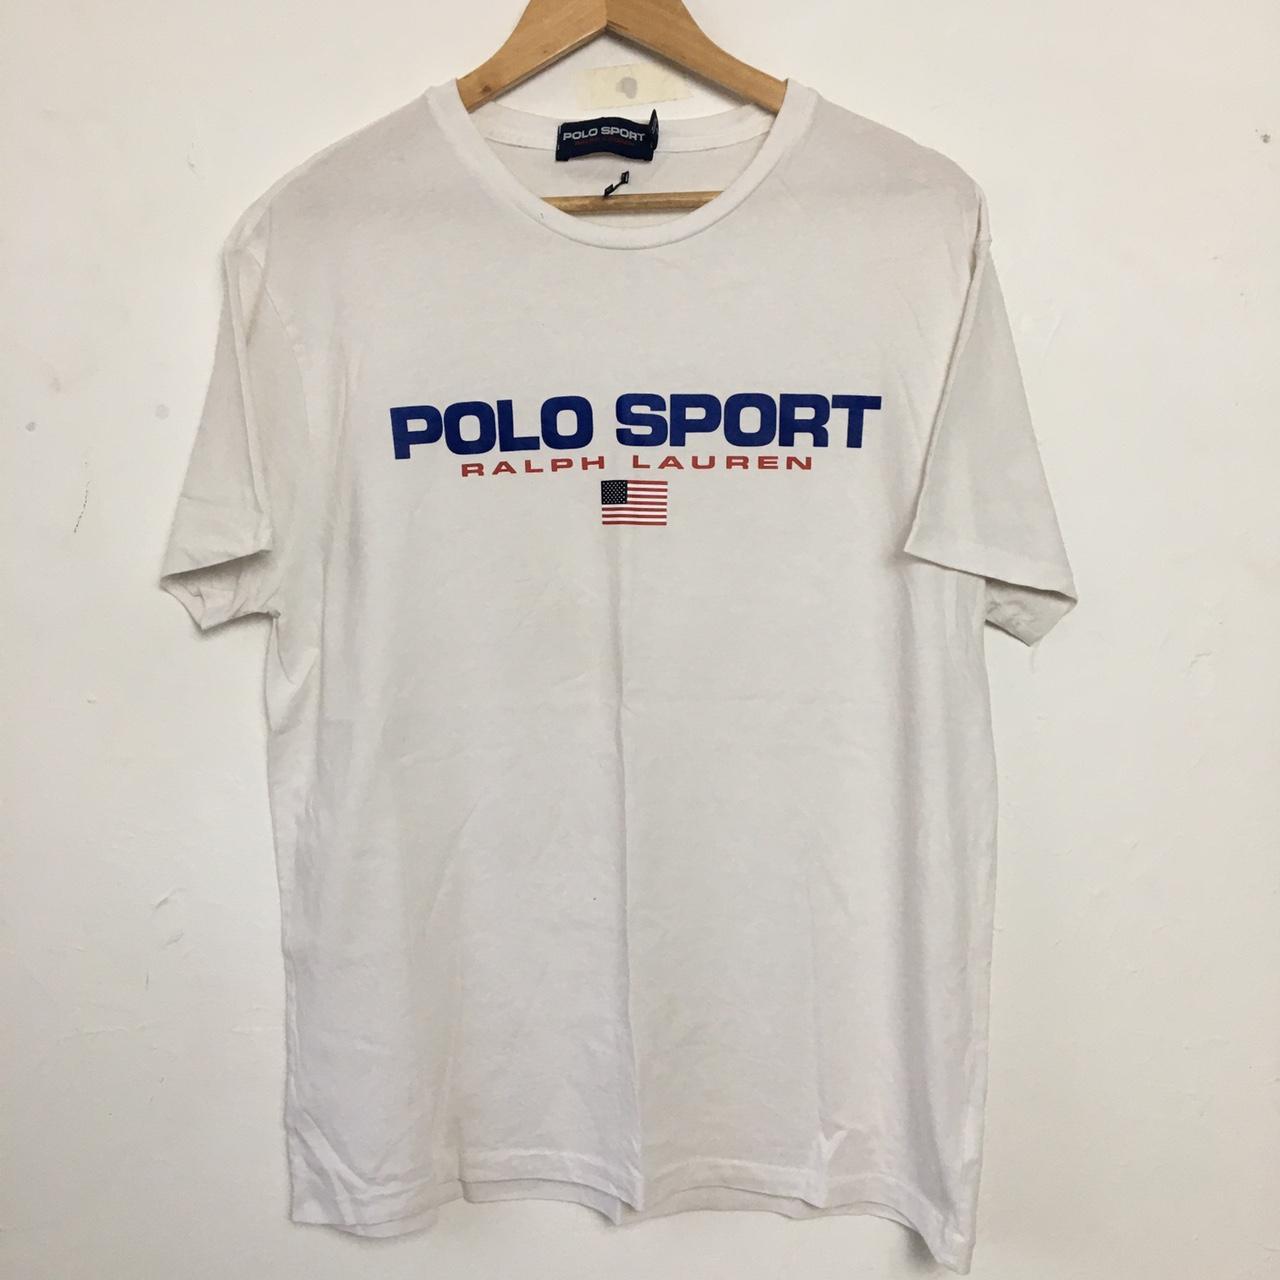 Polo Sport Men's T-shirt | Depop